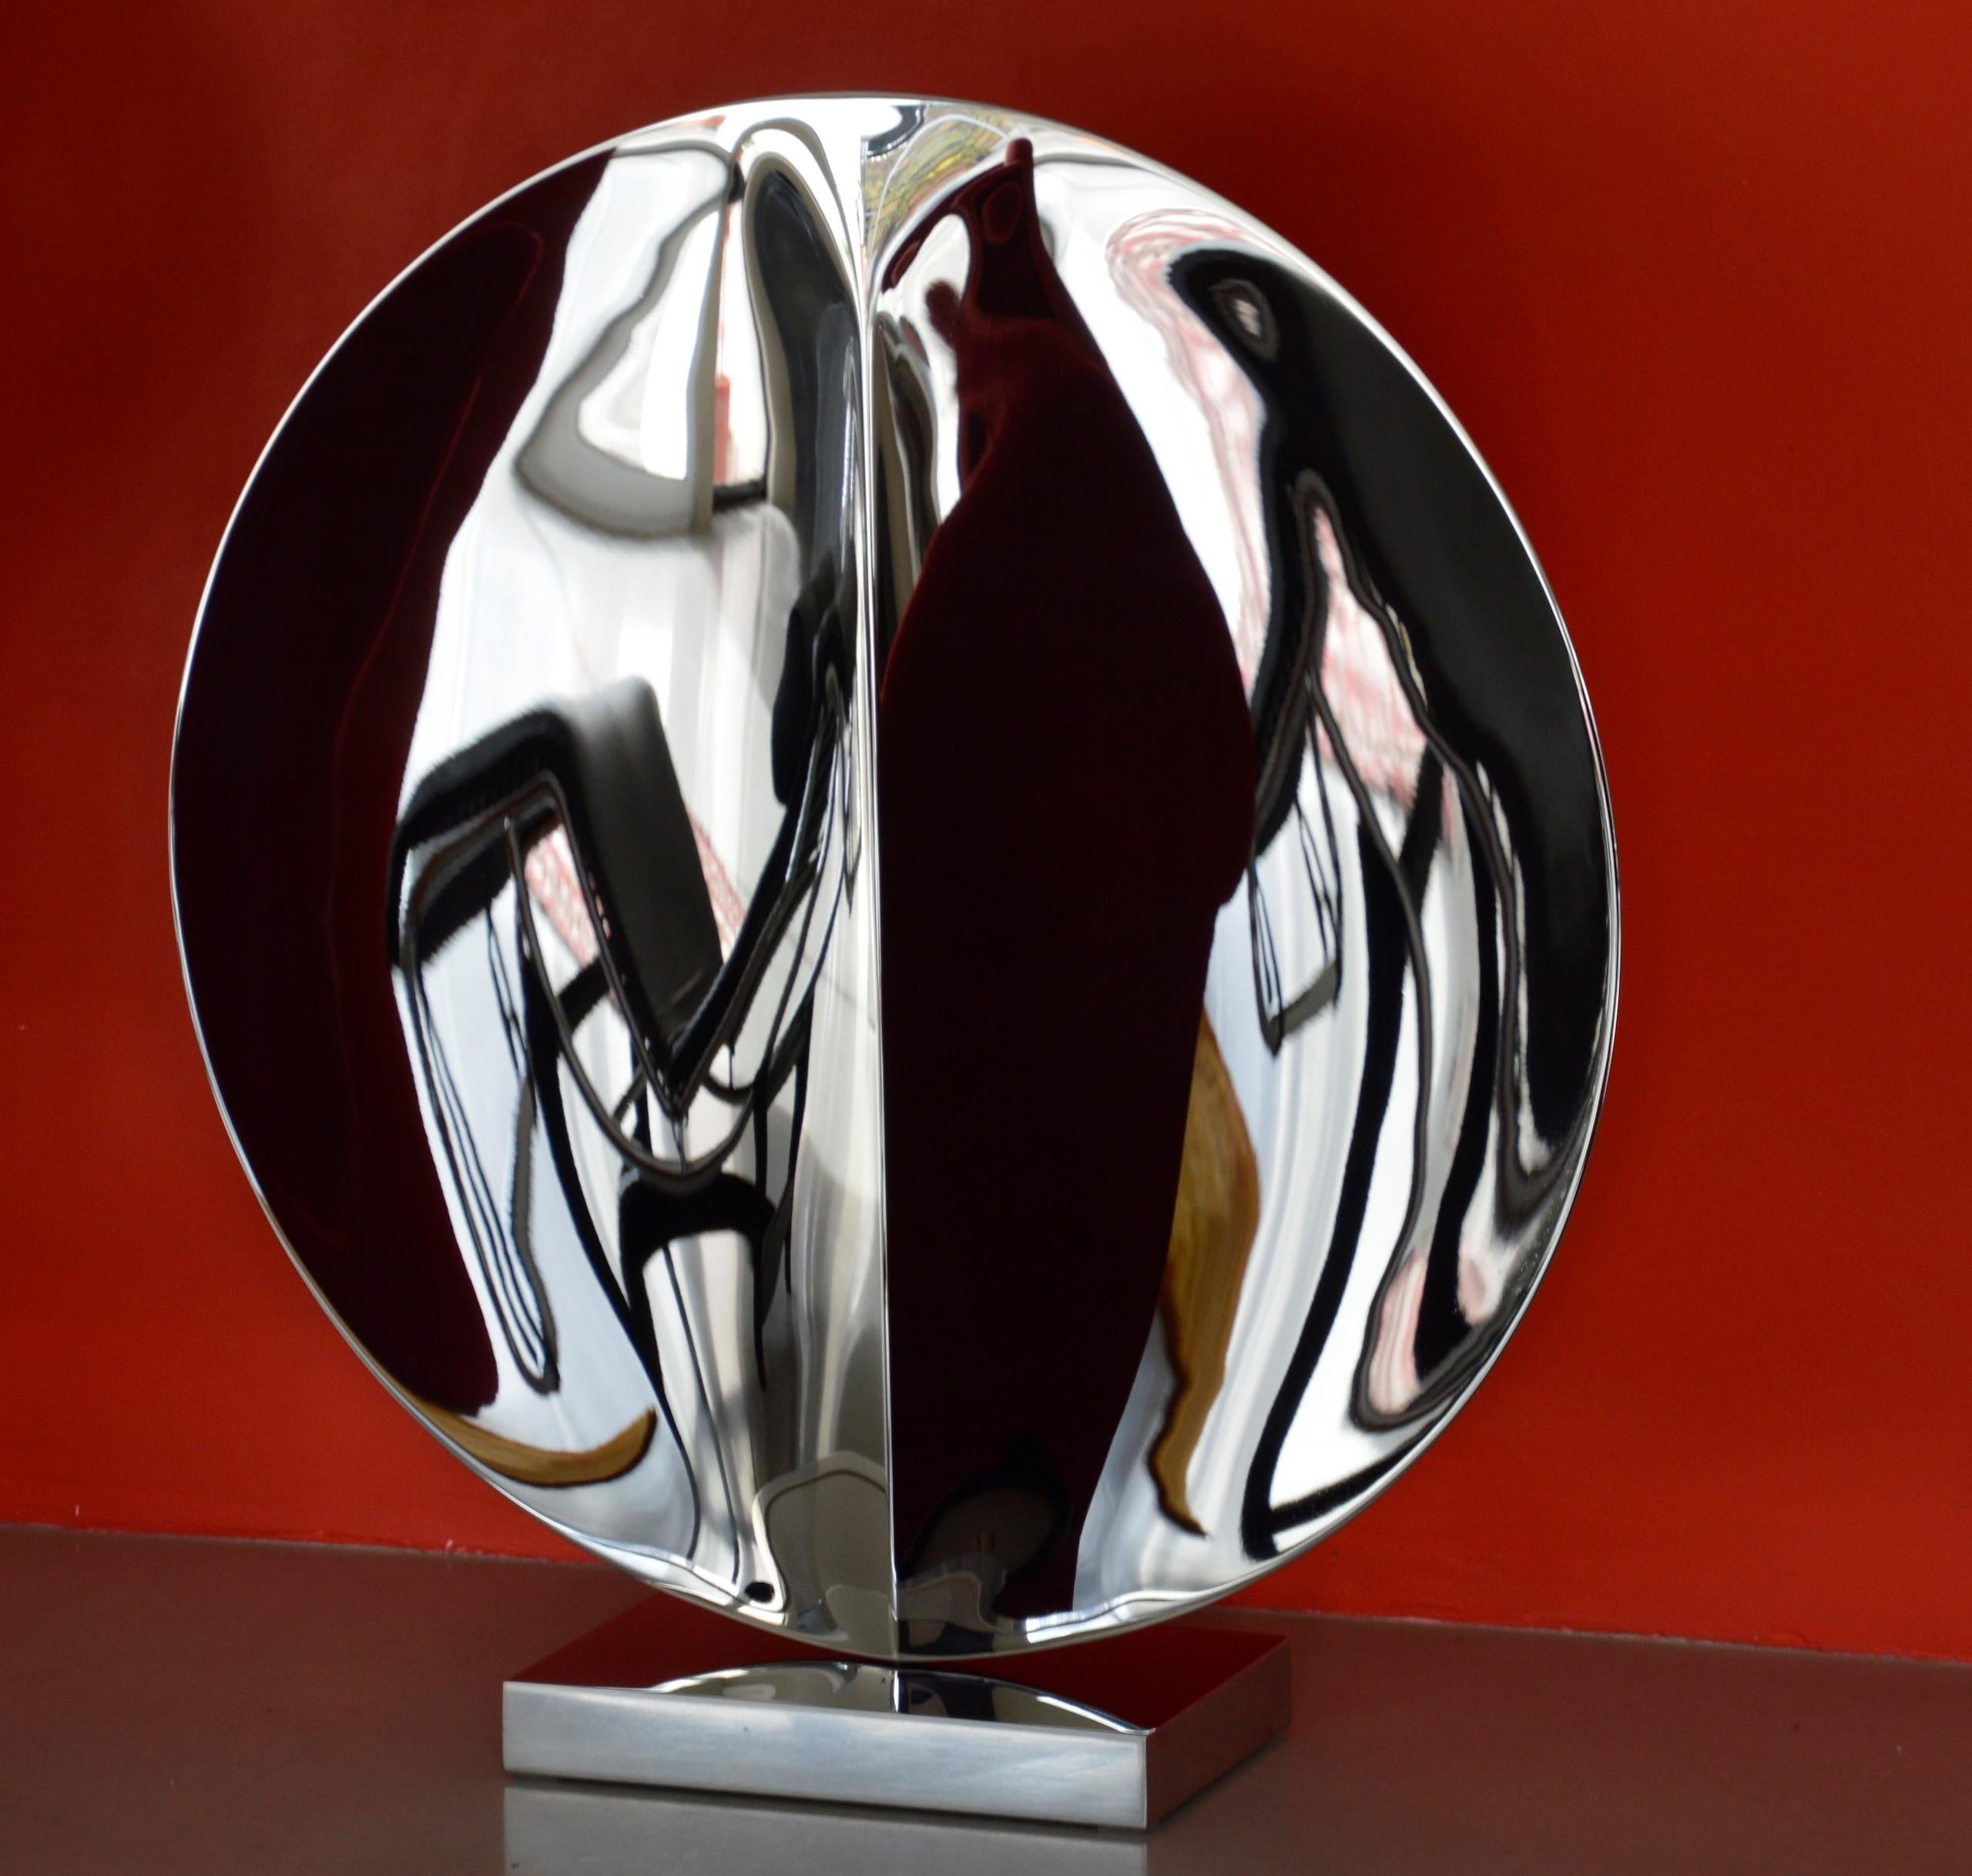 Mirror "with fold" I est une sculpture et un socle uniques en acier inoxydable poli miroir de l'artiste contemporain Franck K, dont les dimensions sont 77 × 73 × 20 cm (30,3 × 28,7 × 7,9 in). 
La sculpture est signée et accompagnée d'un certificat